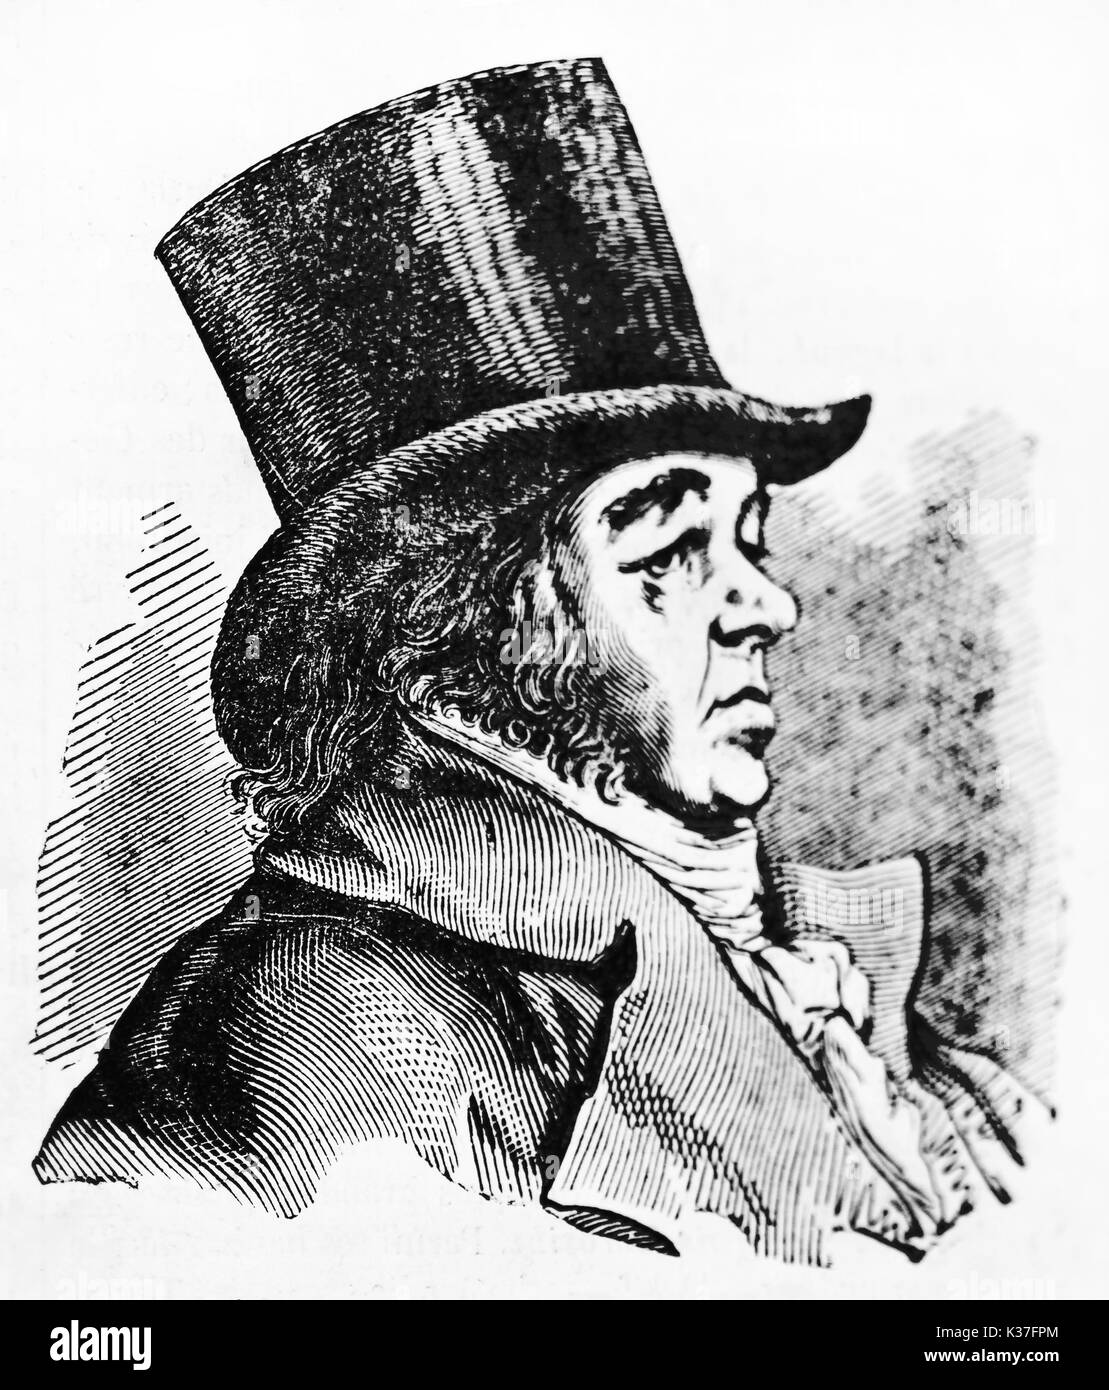 Vue côté ancienne portrait de Francisco Goya (1746 - 1828), peintre romantique espagnol, représenté sur son profil porter un grand chapeau. Par auteur non identifié publié le magasin pittoresque Paris 1834 Banque D'Images